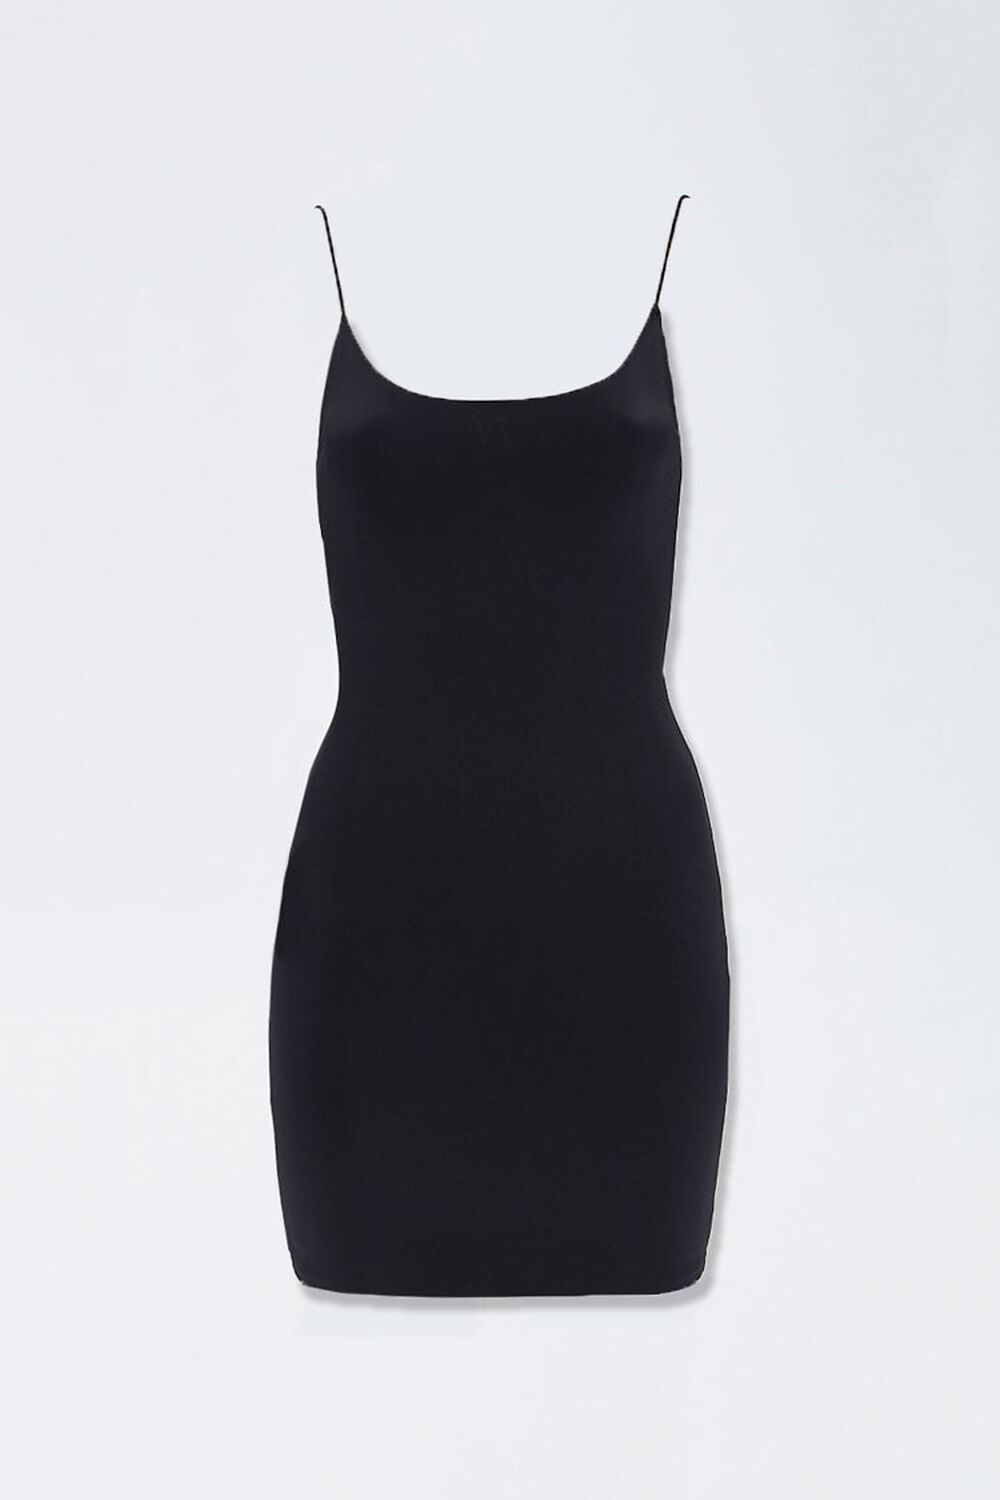 BLACK Scoop-Cut Cami Bodycon Dress, image 1